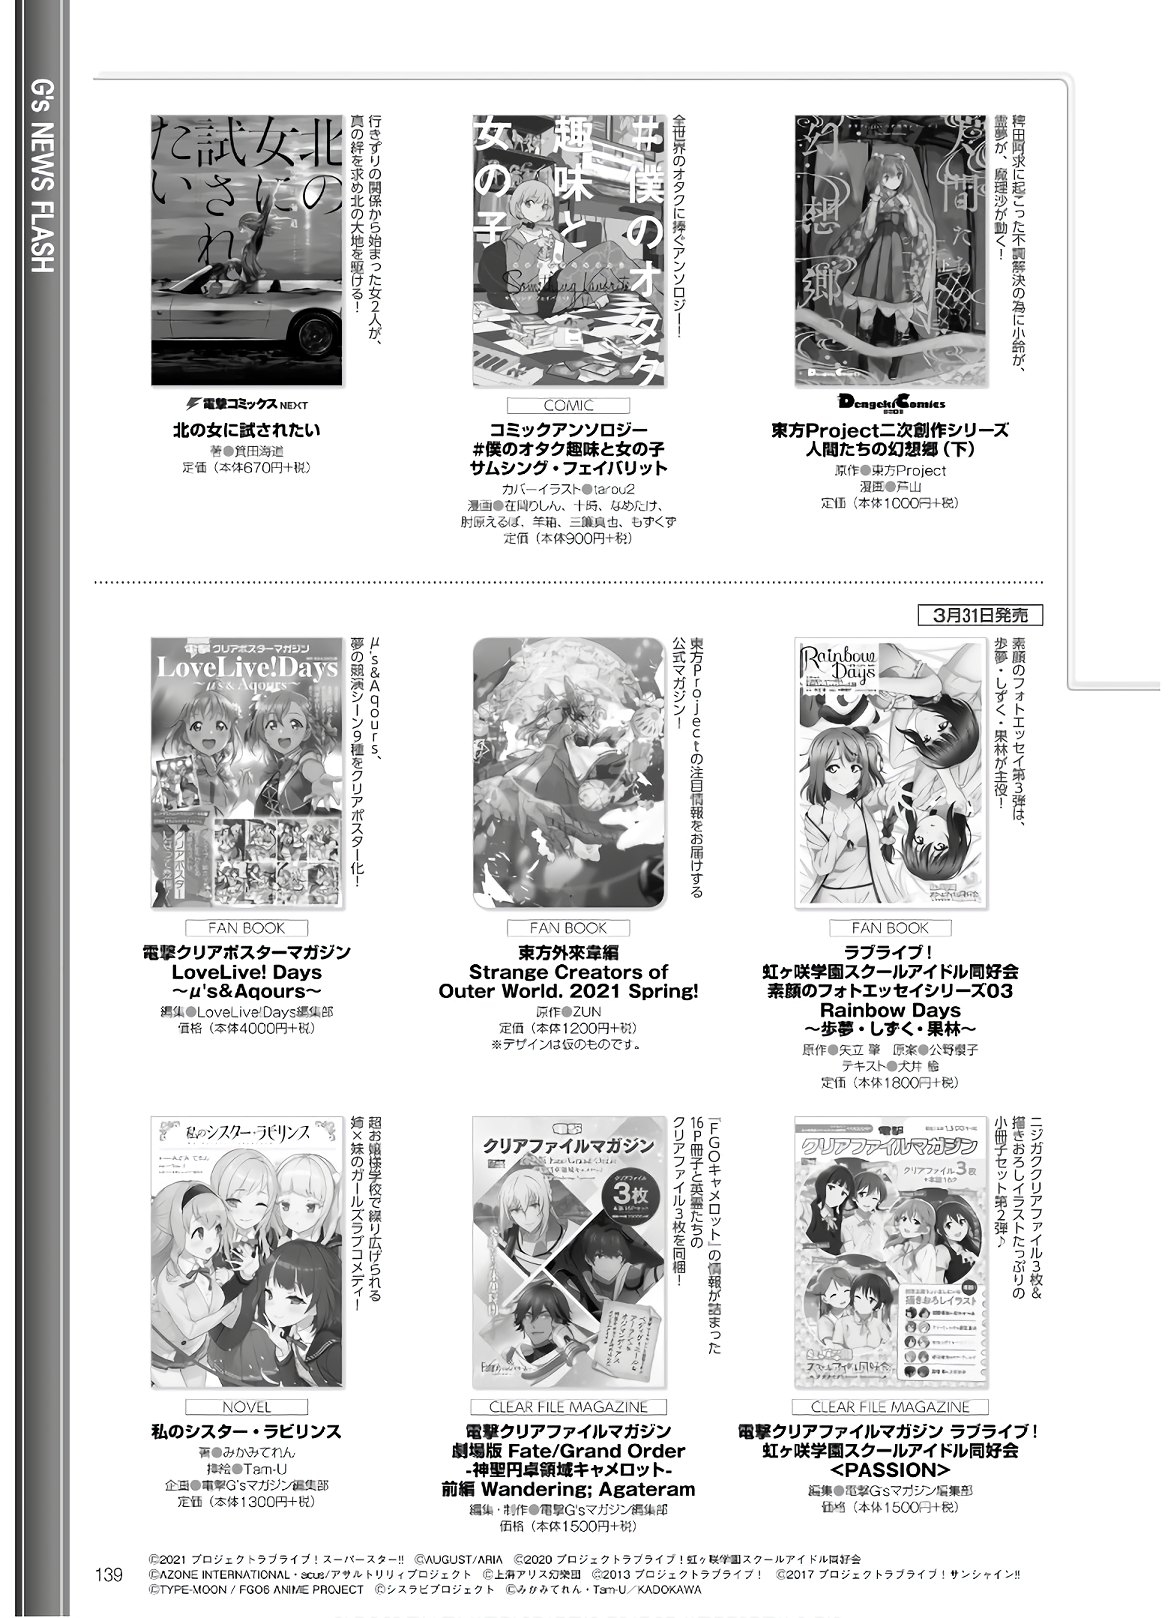 Dengeki G's Magazine #286 - May 2021 136